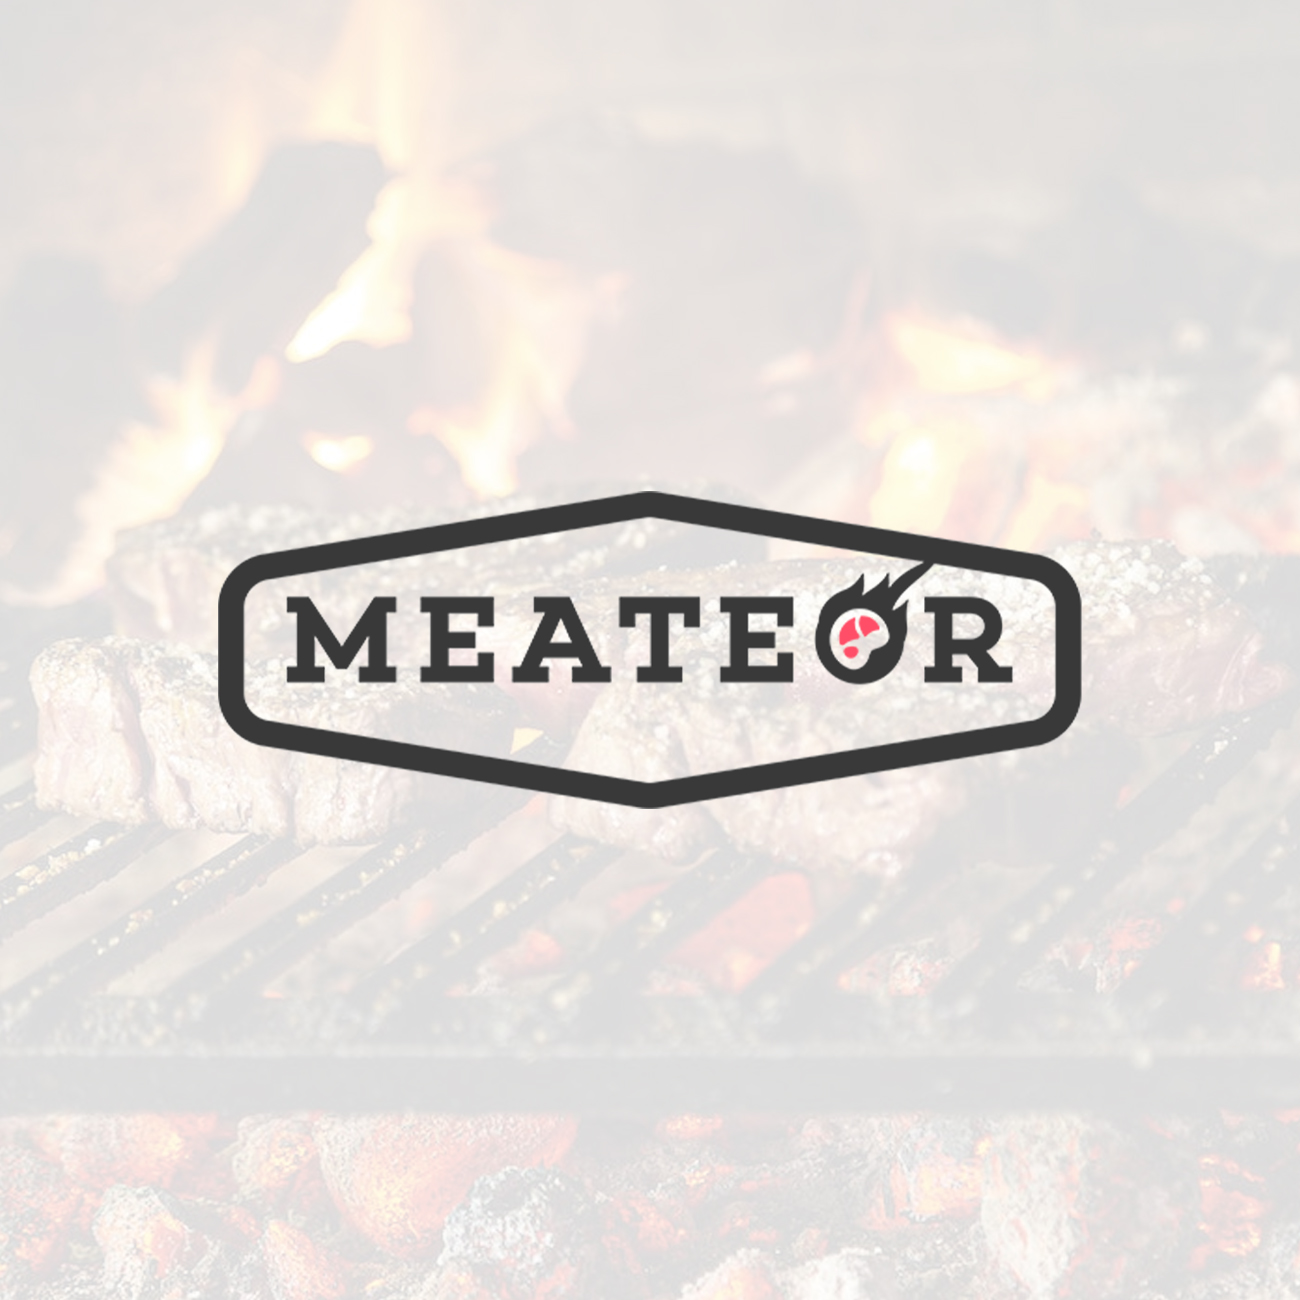 Referenzen Meateor eBay Design